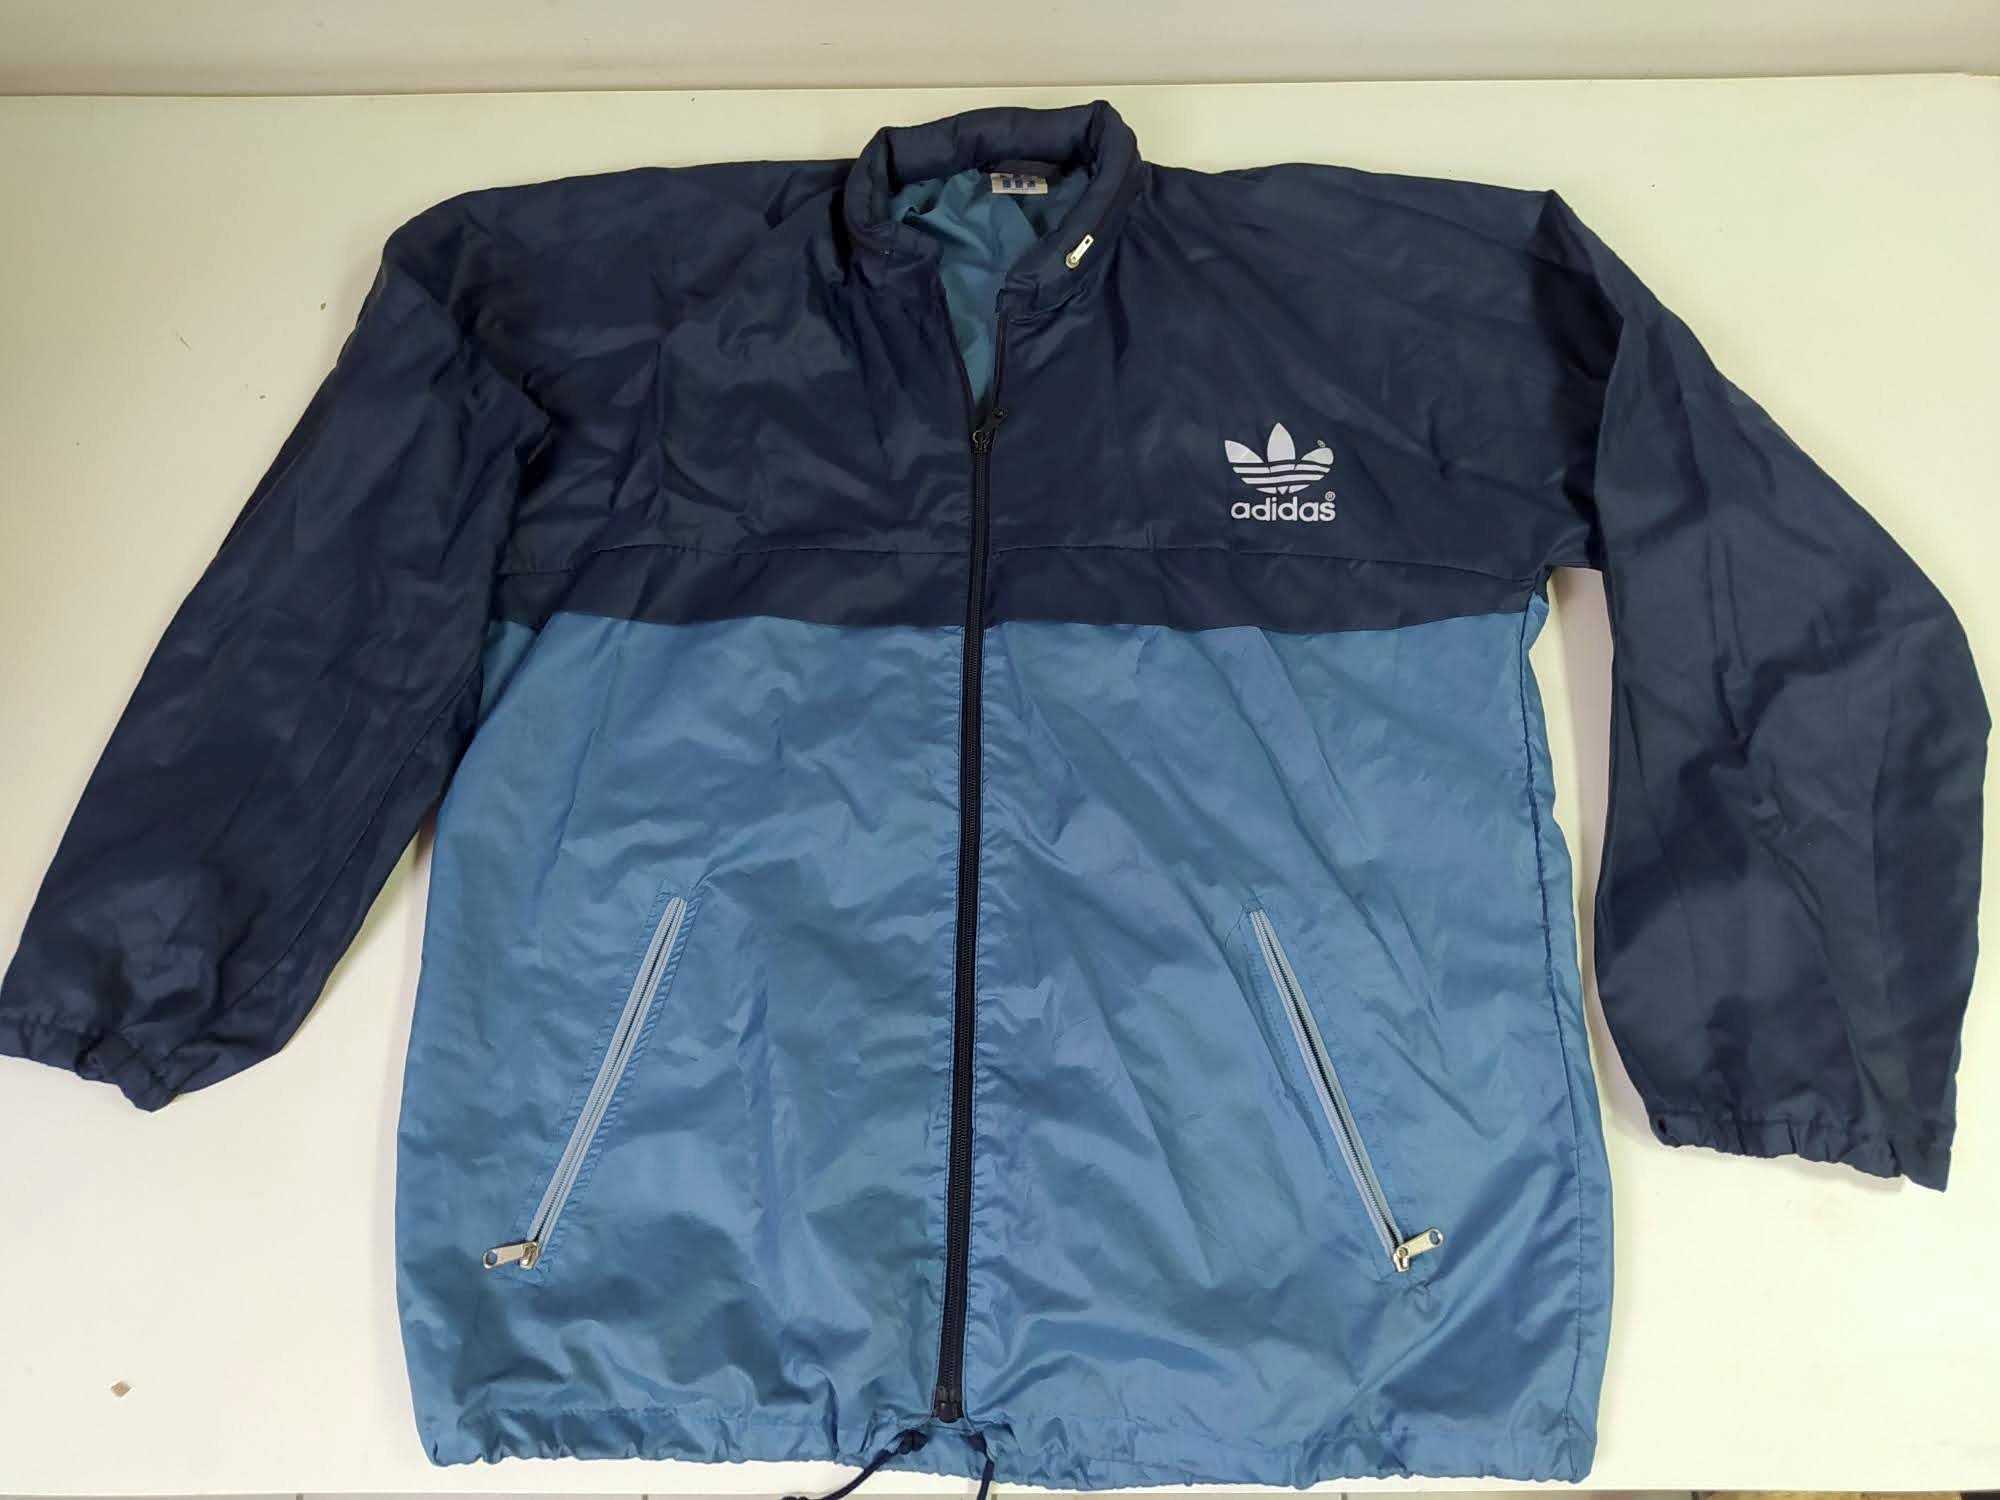 1980s Adidas Windbreaker Jacket - campestre.al.gov.br